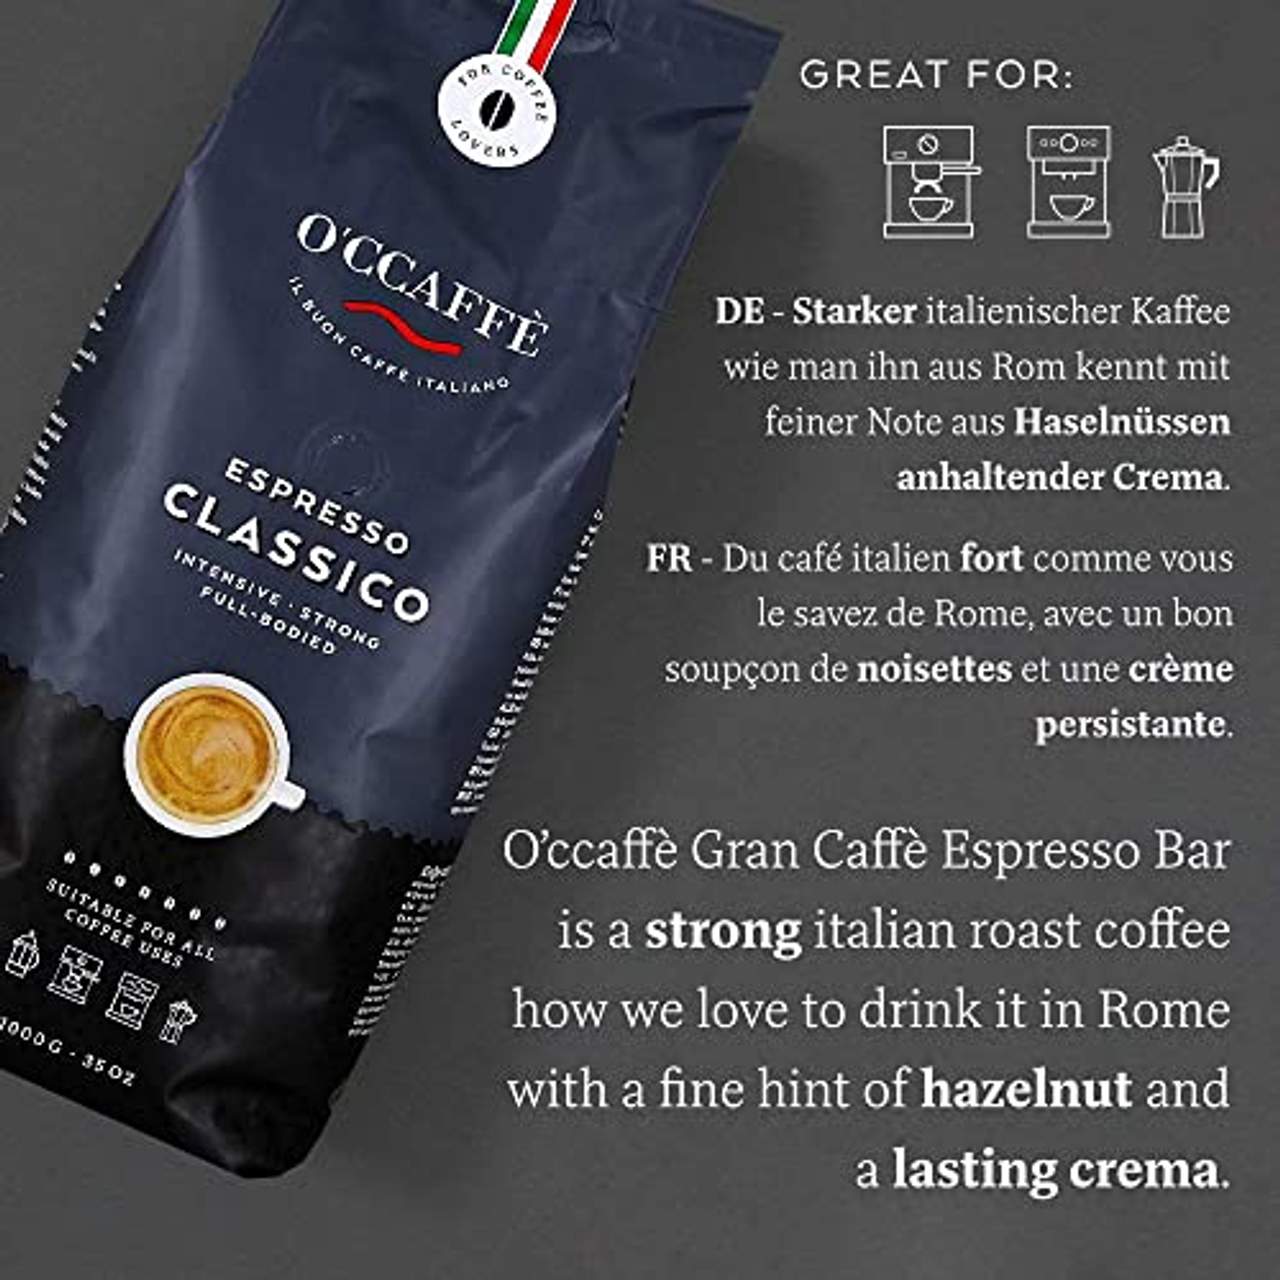 O’ccaffè Espresso Bar starker